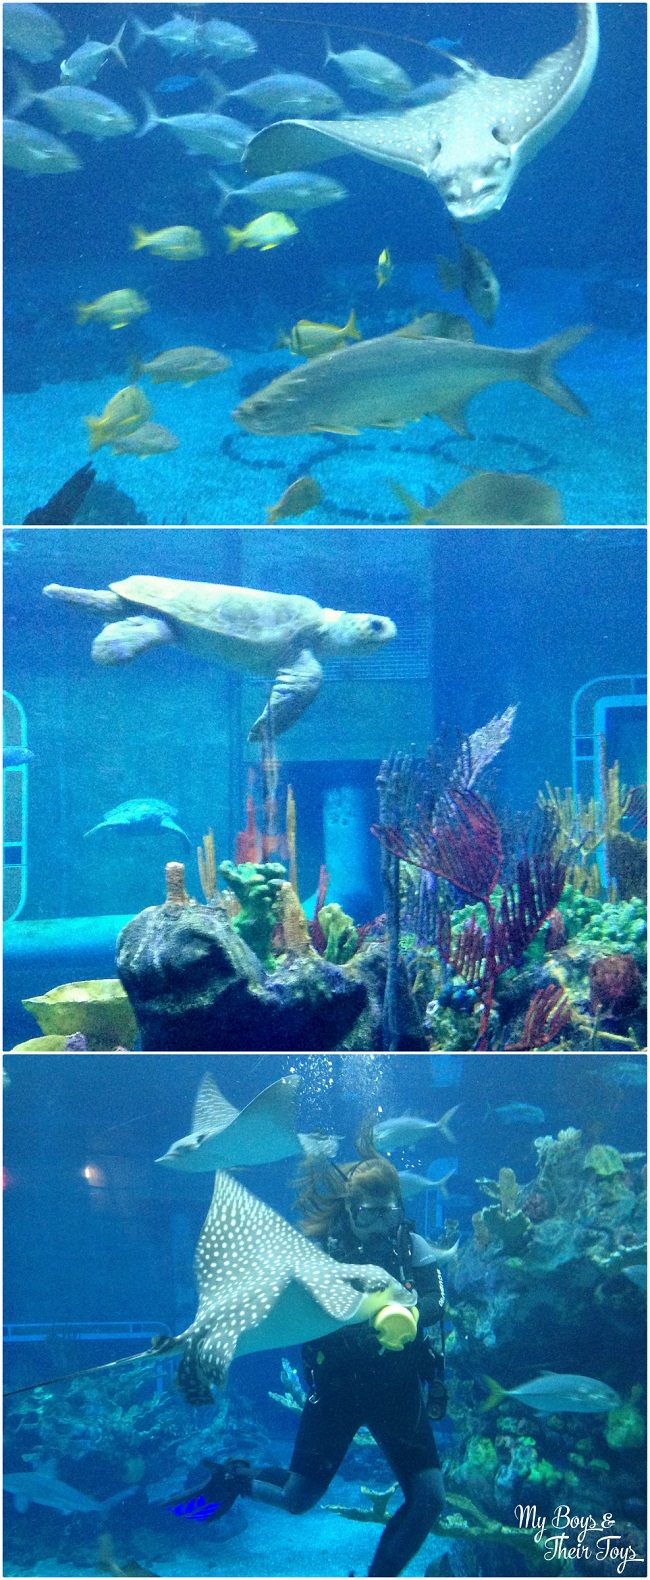 The Seas aquarium